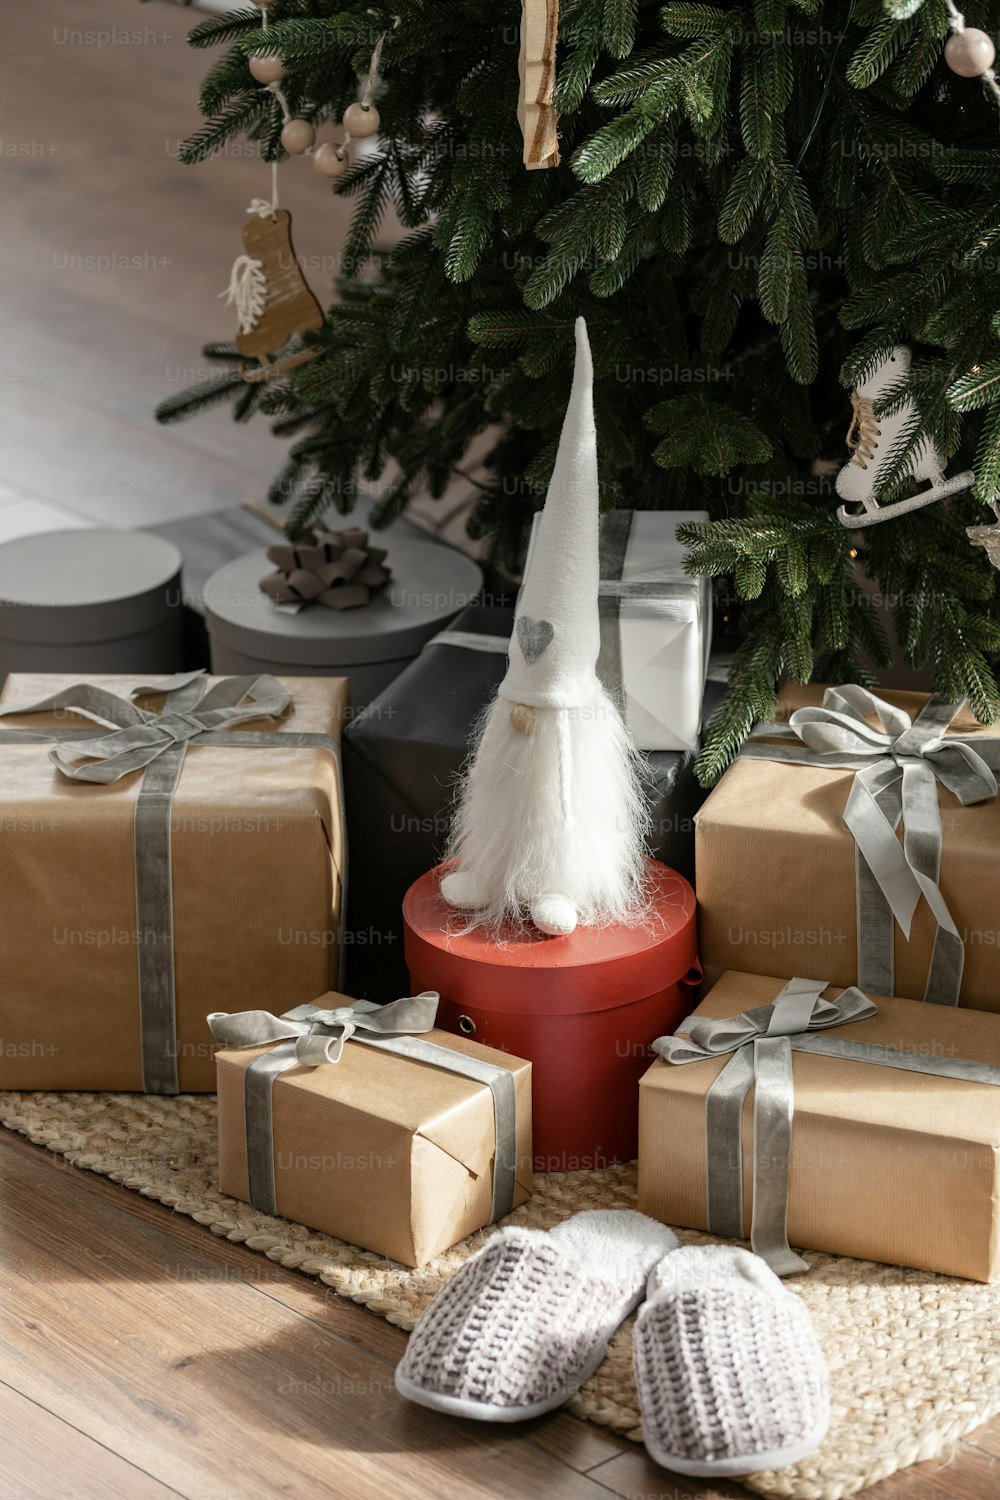 Vue verticale de nombreux cadeaux du nouvel an, cadeaux et jouets sous le sapin de Noël avec décor d’hiver. Concept de la célébration de Noël